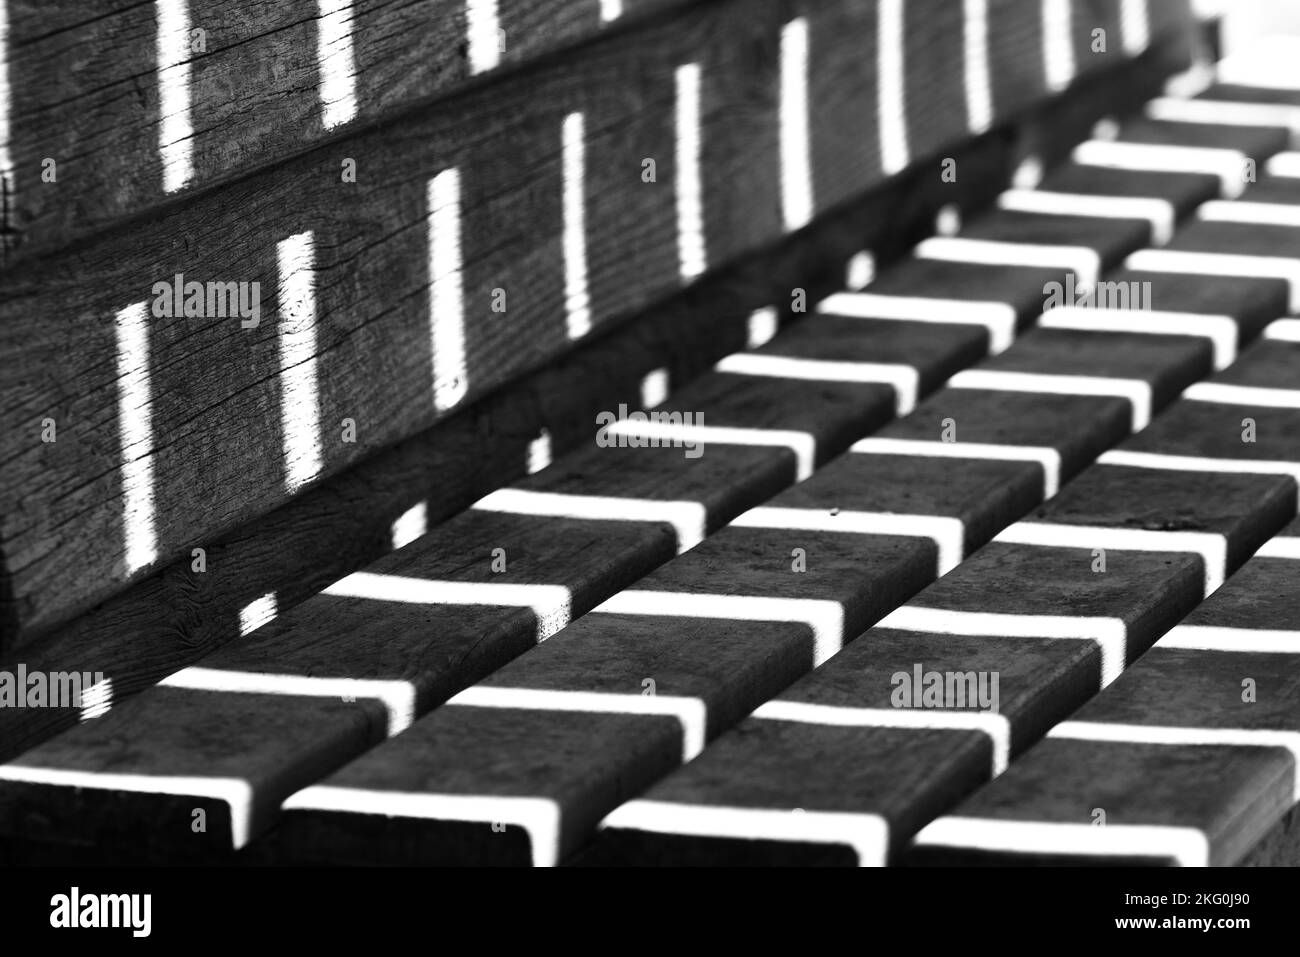 Kontrastreiche Schwarz-Weiß-Fotos des Sonnenlichts, die Muster auf einer Bank bilden Stockfoto